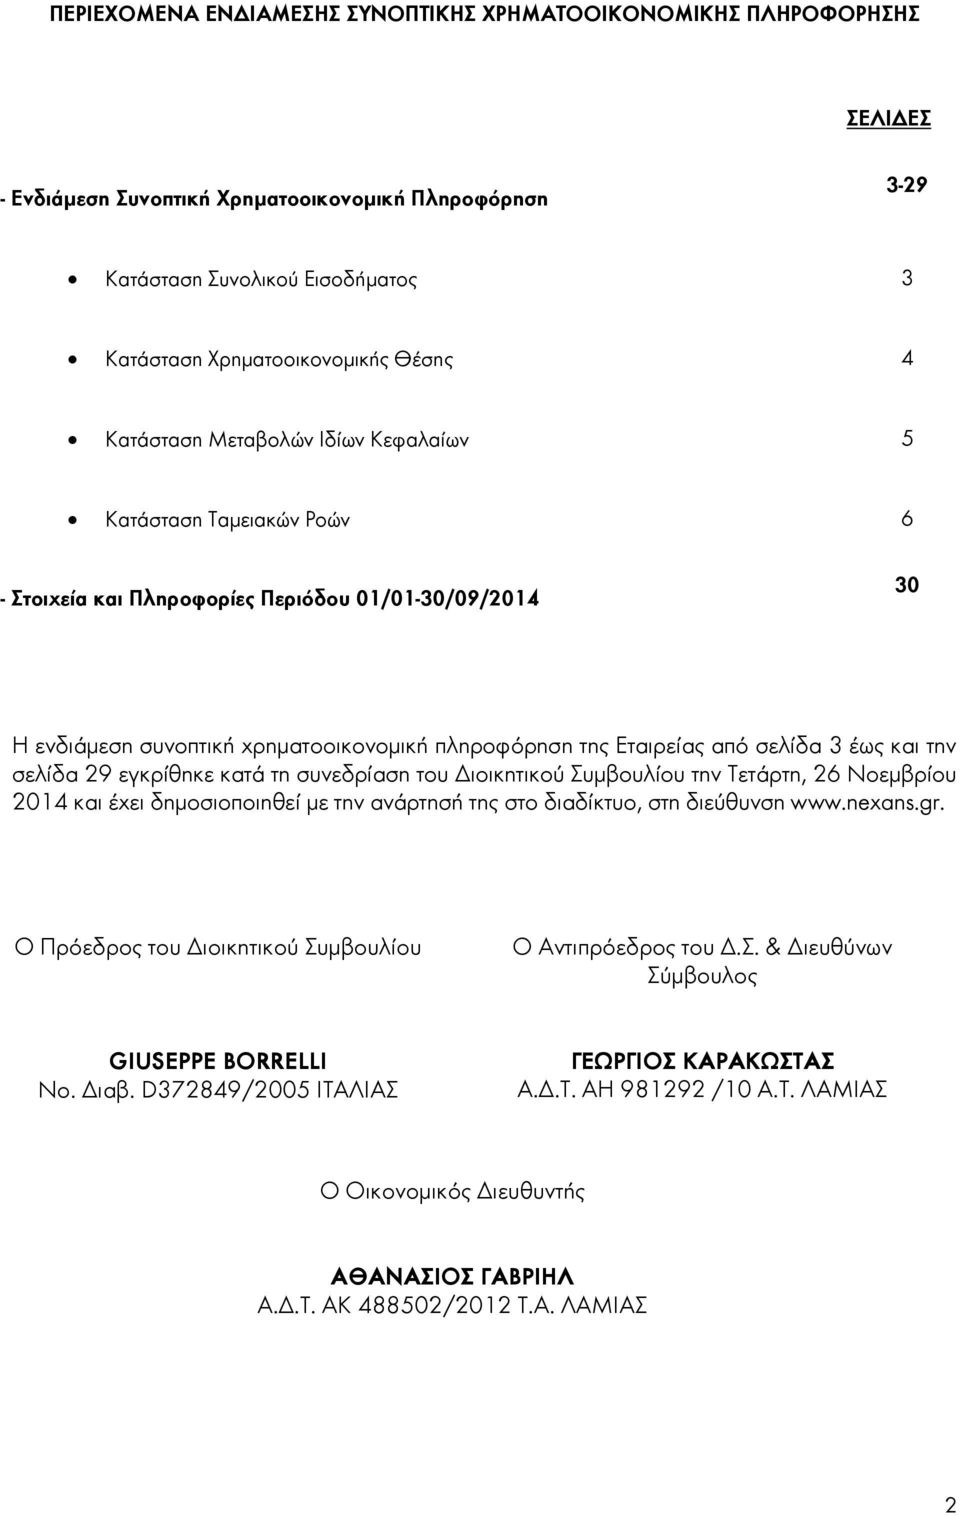 3 έως και την σελίδα 29 εγκρίθηκε κατά τη συνεδρίαση του Διοικητικού Συμβουλίου την Τετάρτη, 26 Νοεμβρίου 2014 και έχει δημοσιοποιηθεί με την ανάρτησή της στο διαδίκτυο, στη διεύθυνση www.nexans.gr.